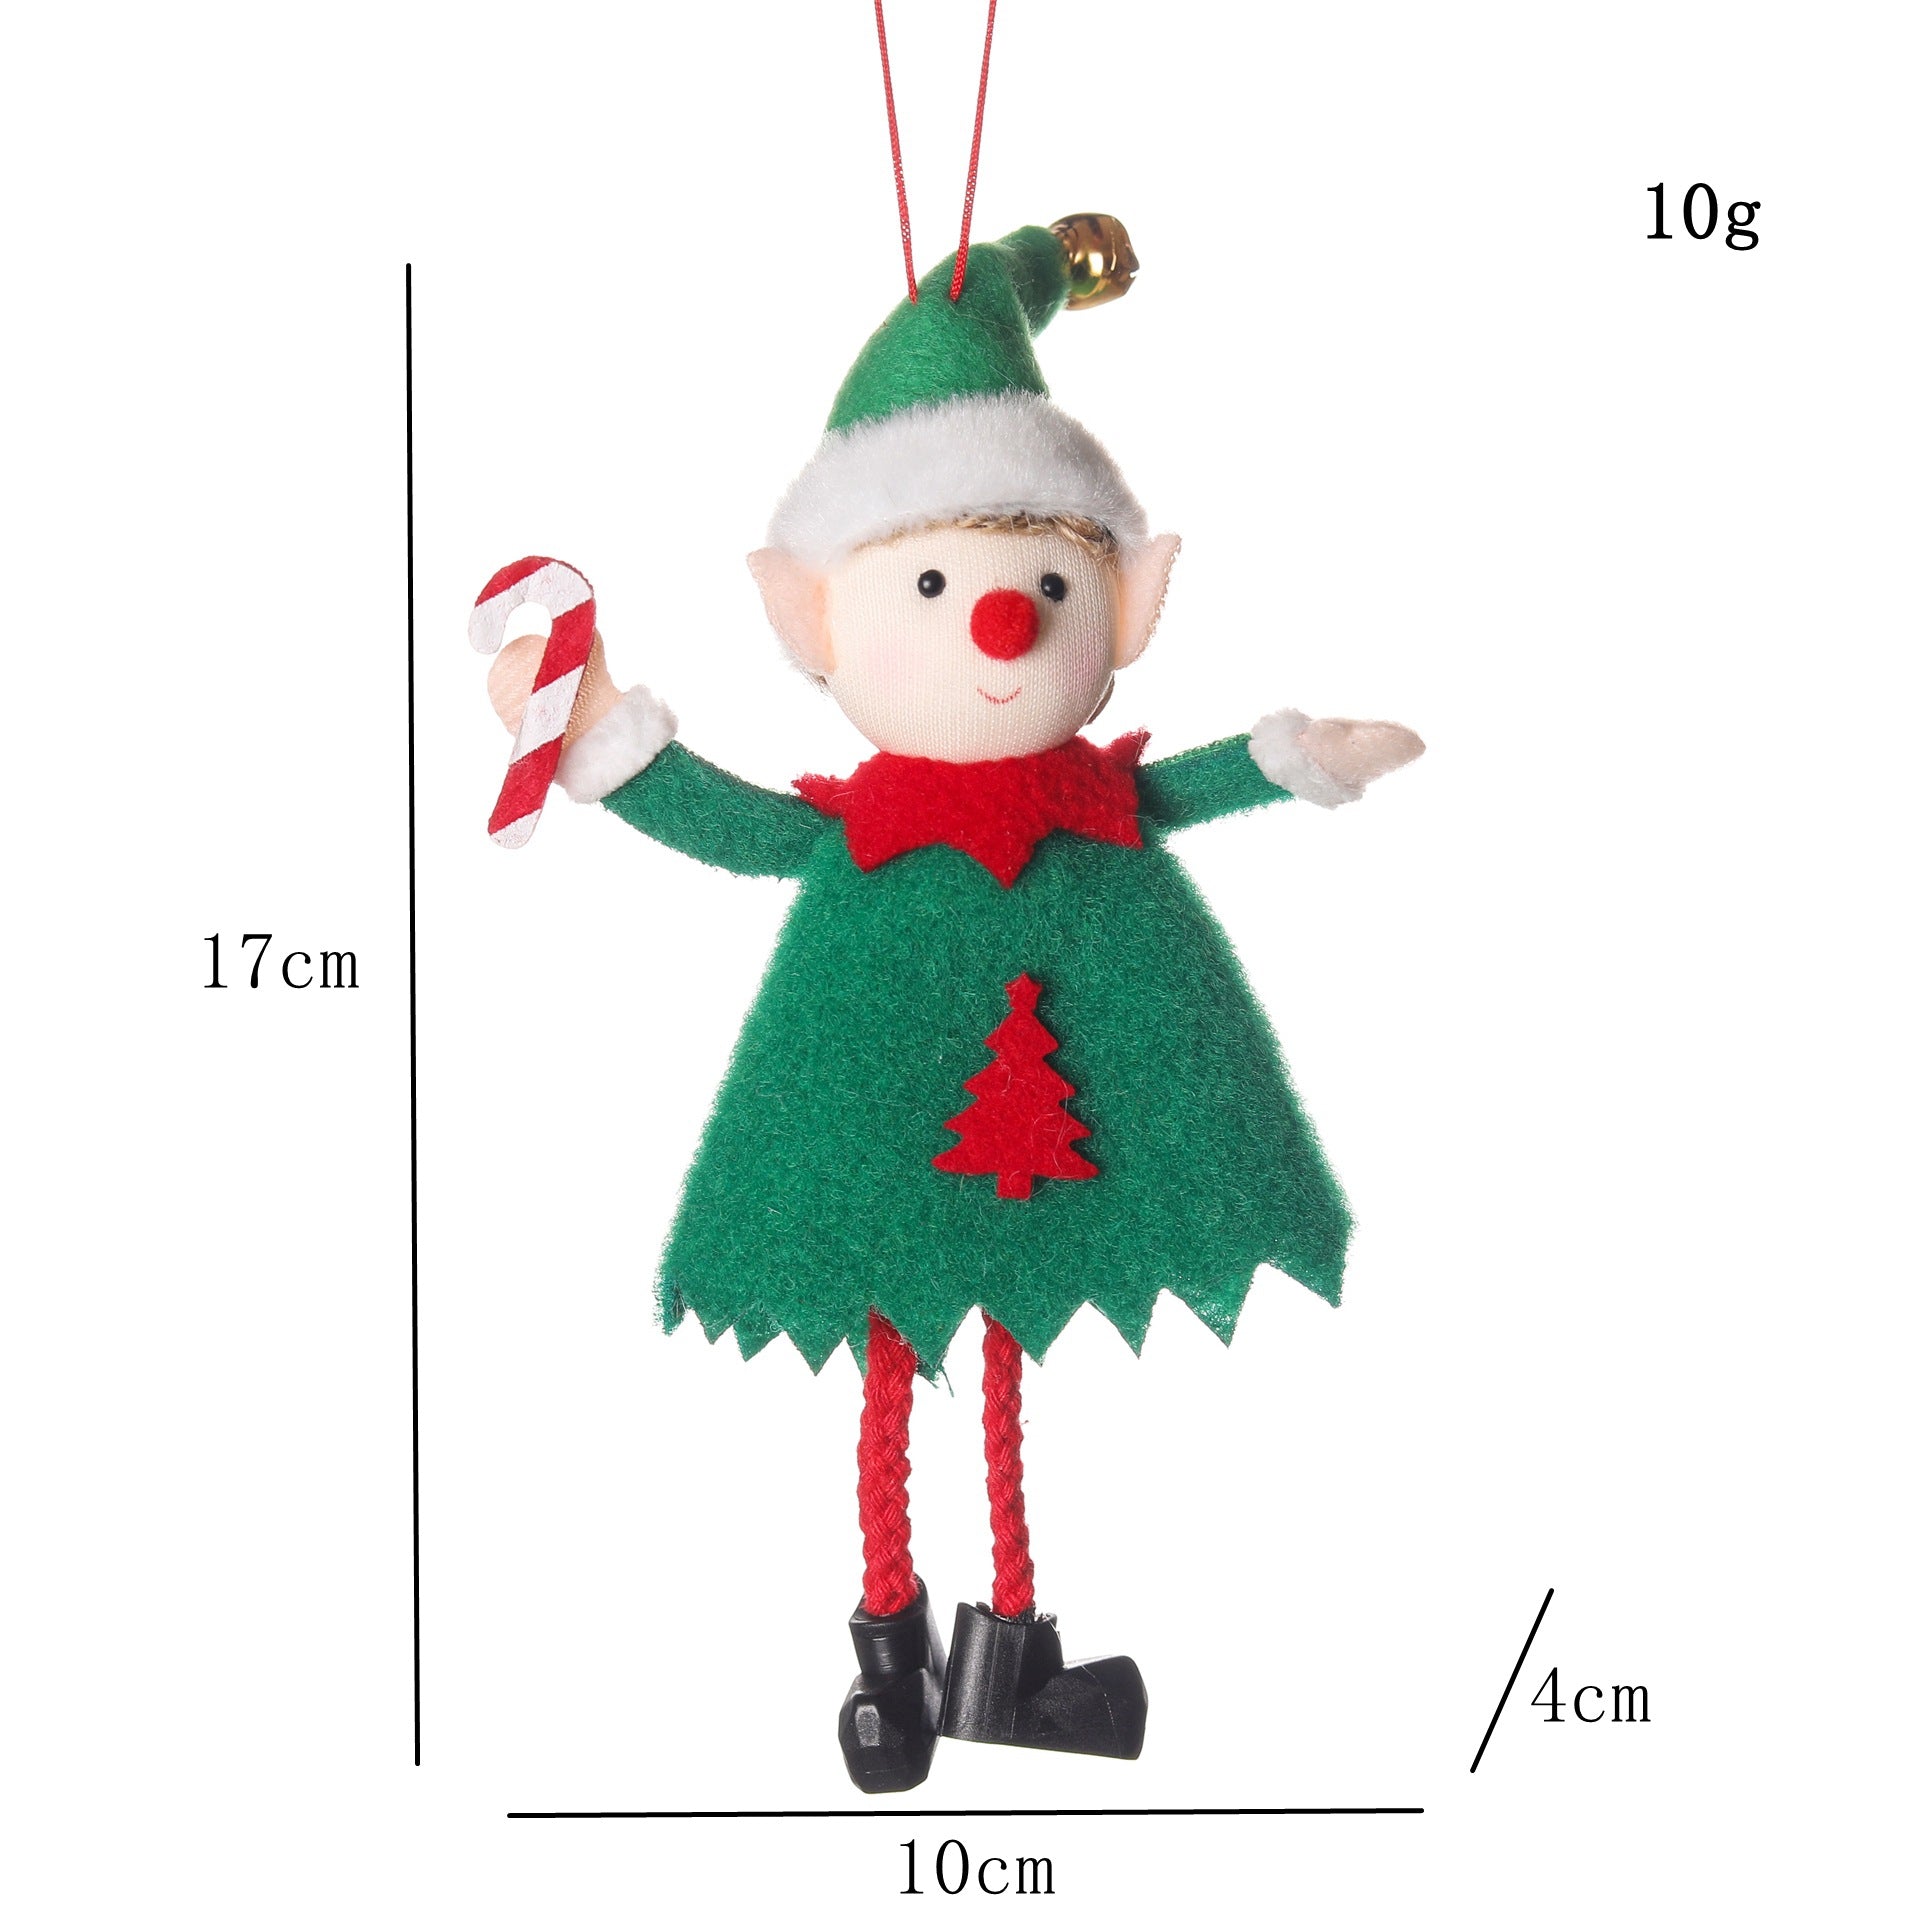 Cute Elf Plush Doll Christmas Tree Decoration - TOY-ACC-18501 - YWSYMC - 42shops